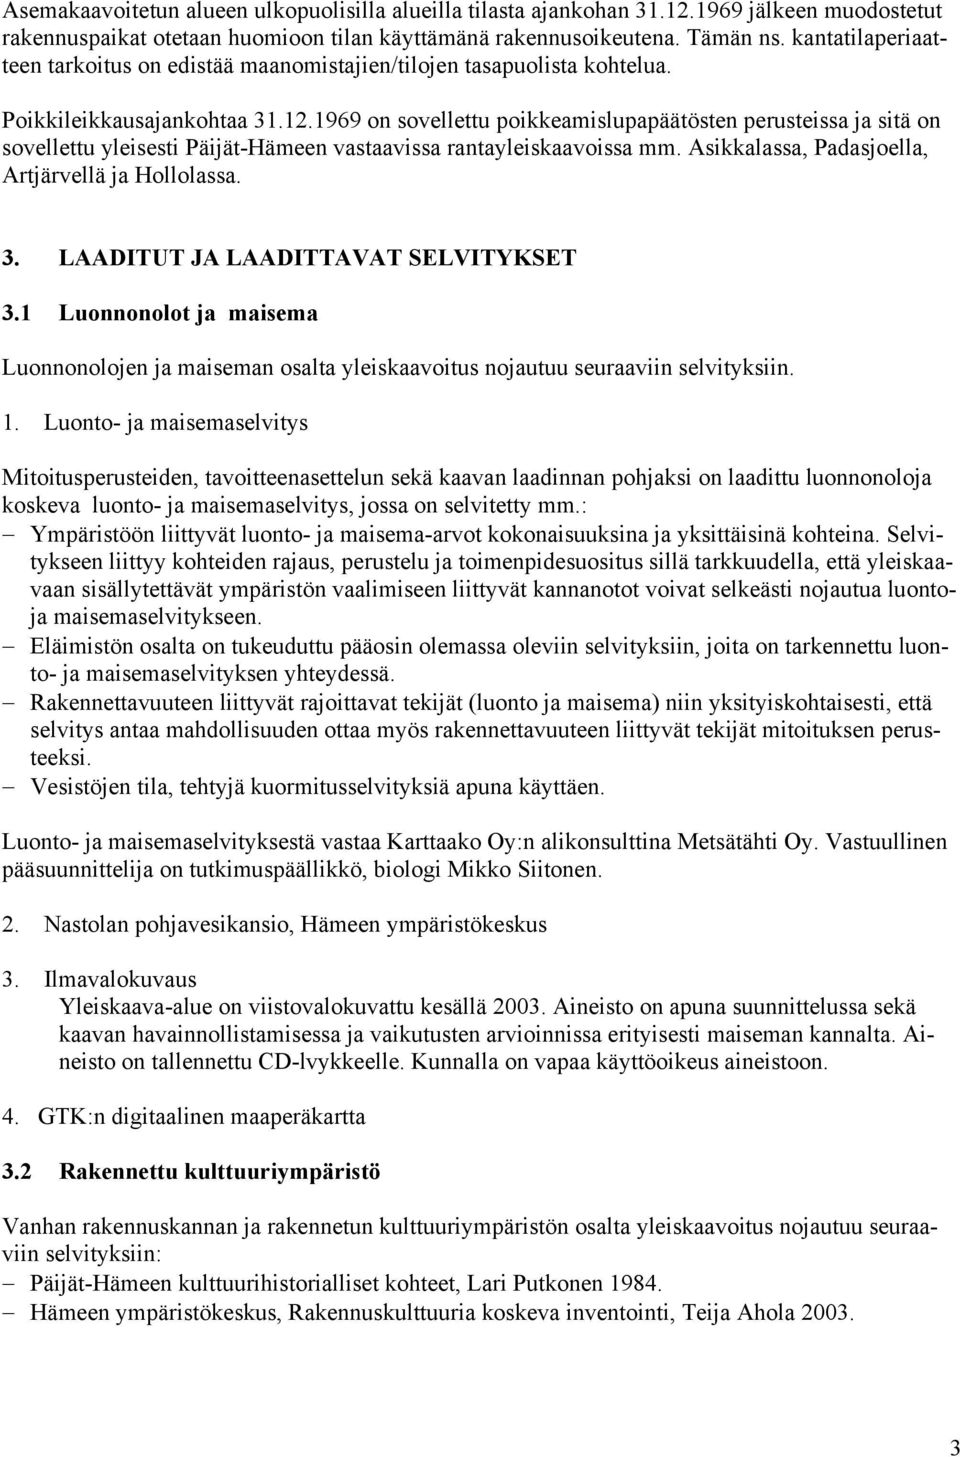 1969 on sovellettu poikkeamislupapäätösten perusteissa ja sitä on sovellettu yleisesti Päijät-Hämeen vastaavissa rantayleiskaavoissa mm. Asikkalassa, Padasjoella, Artjärvellä ja Hollolassa. 3.